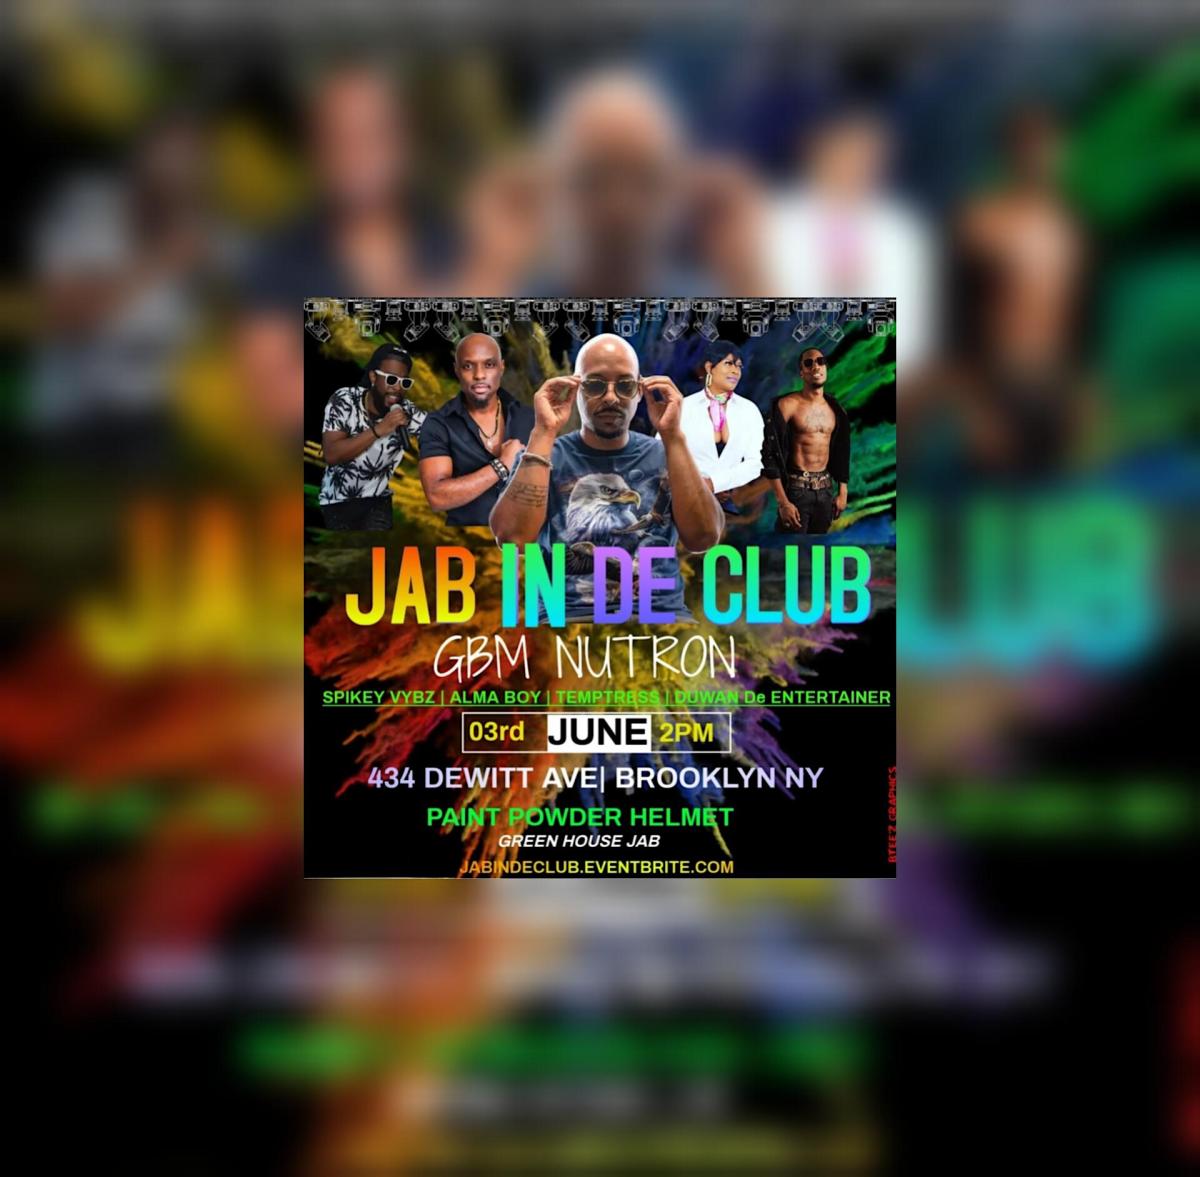 Jab In De Club flyer or graphic.